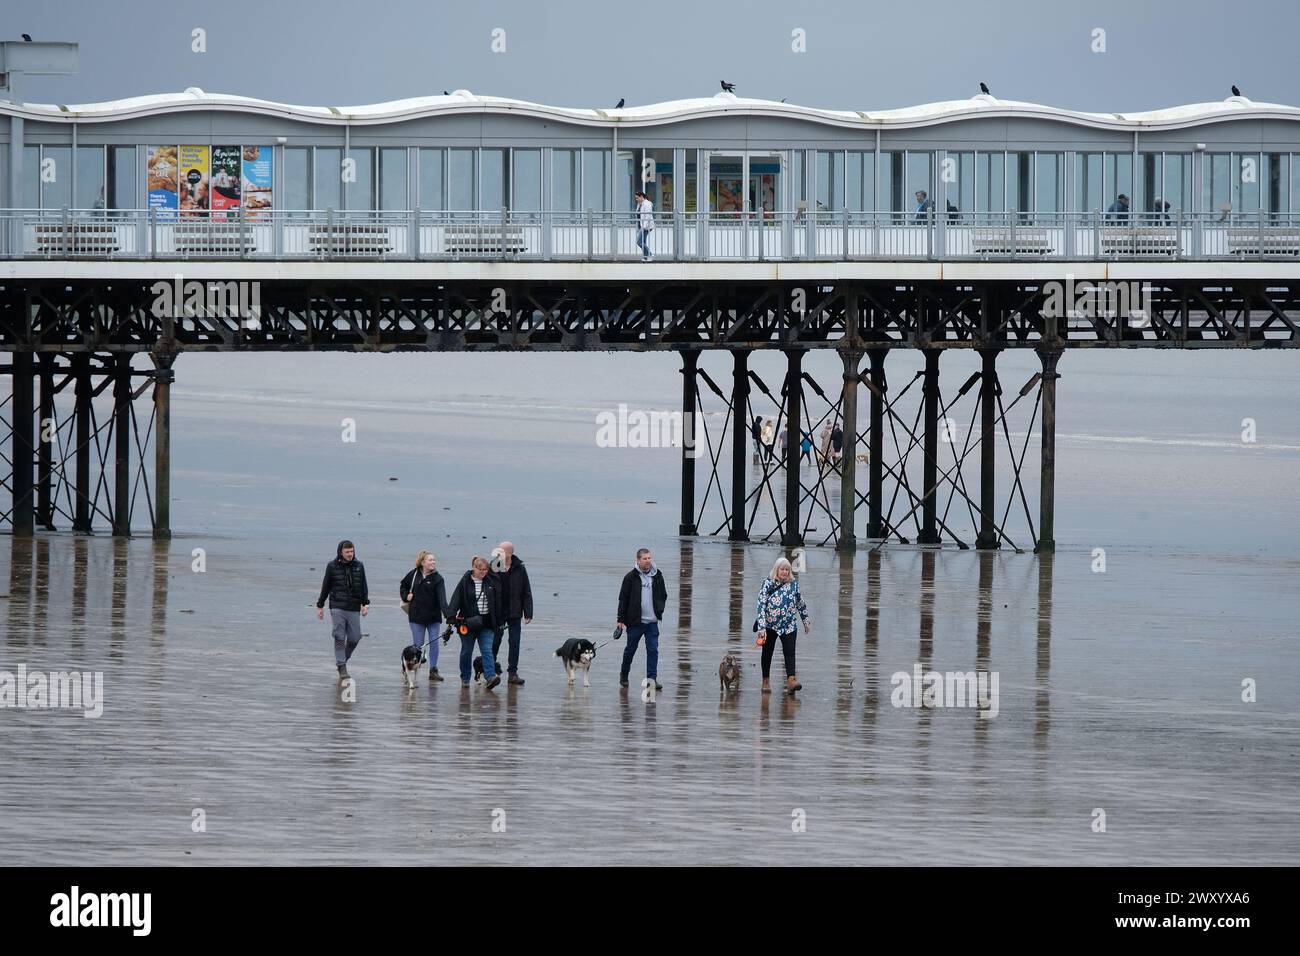 Les gens marchent sur une plage froide, humide, venteuse et pluvieuse. Banque D'Images